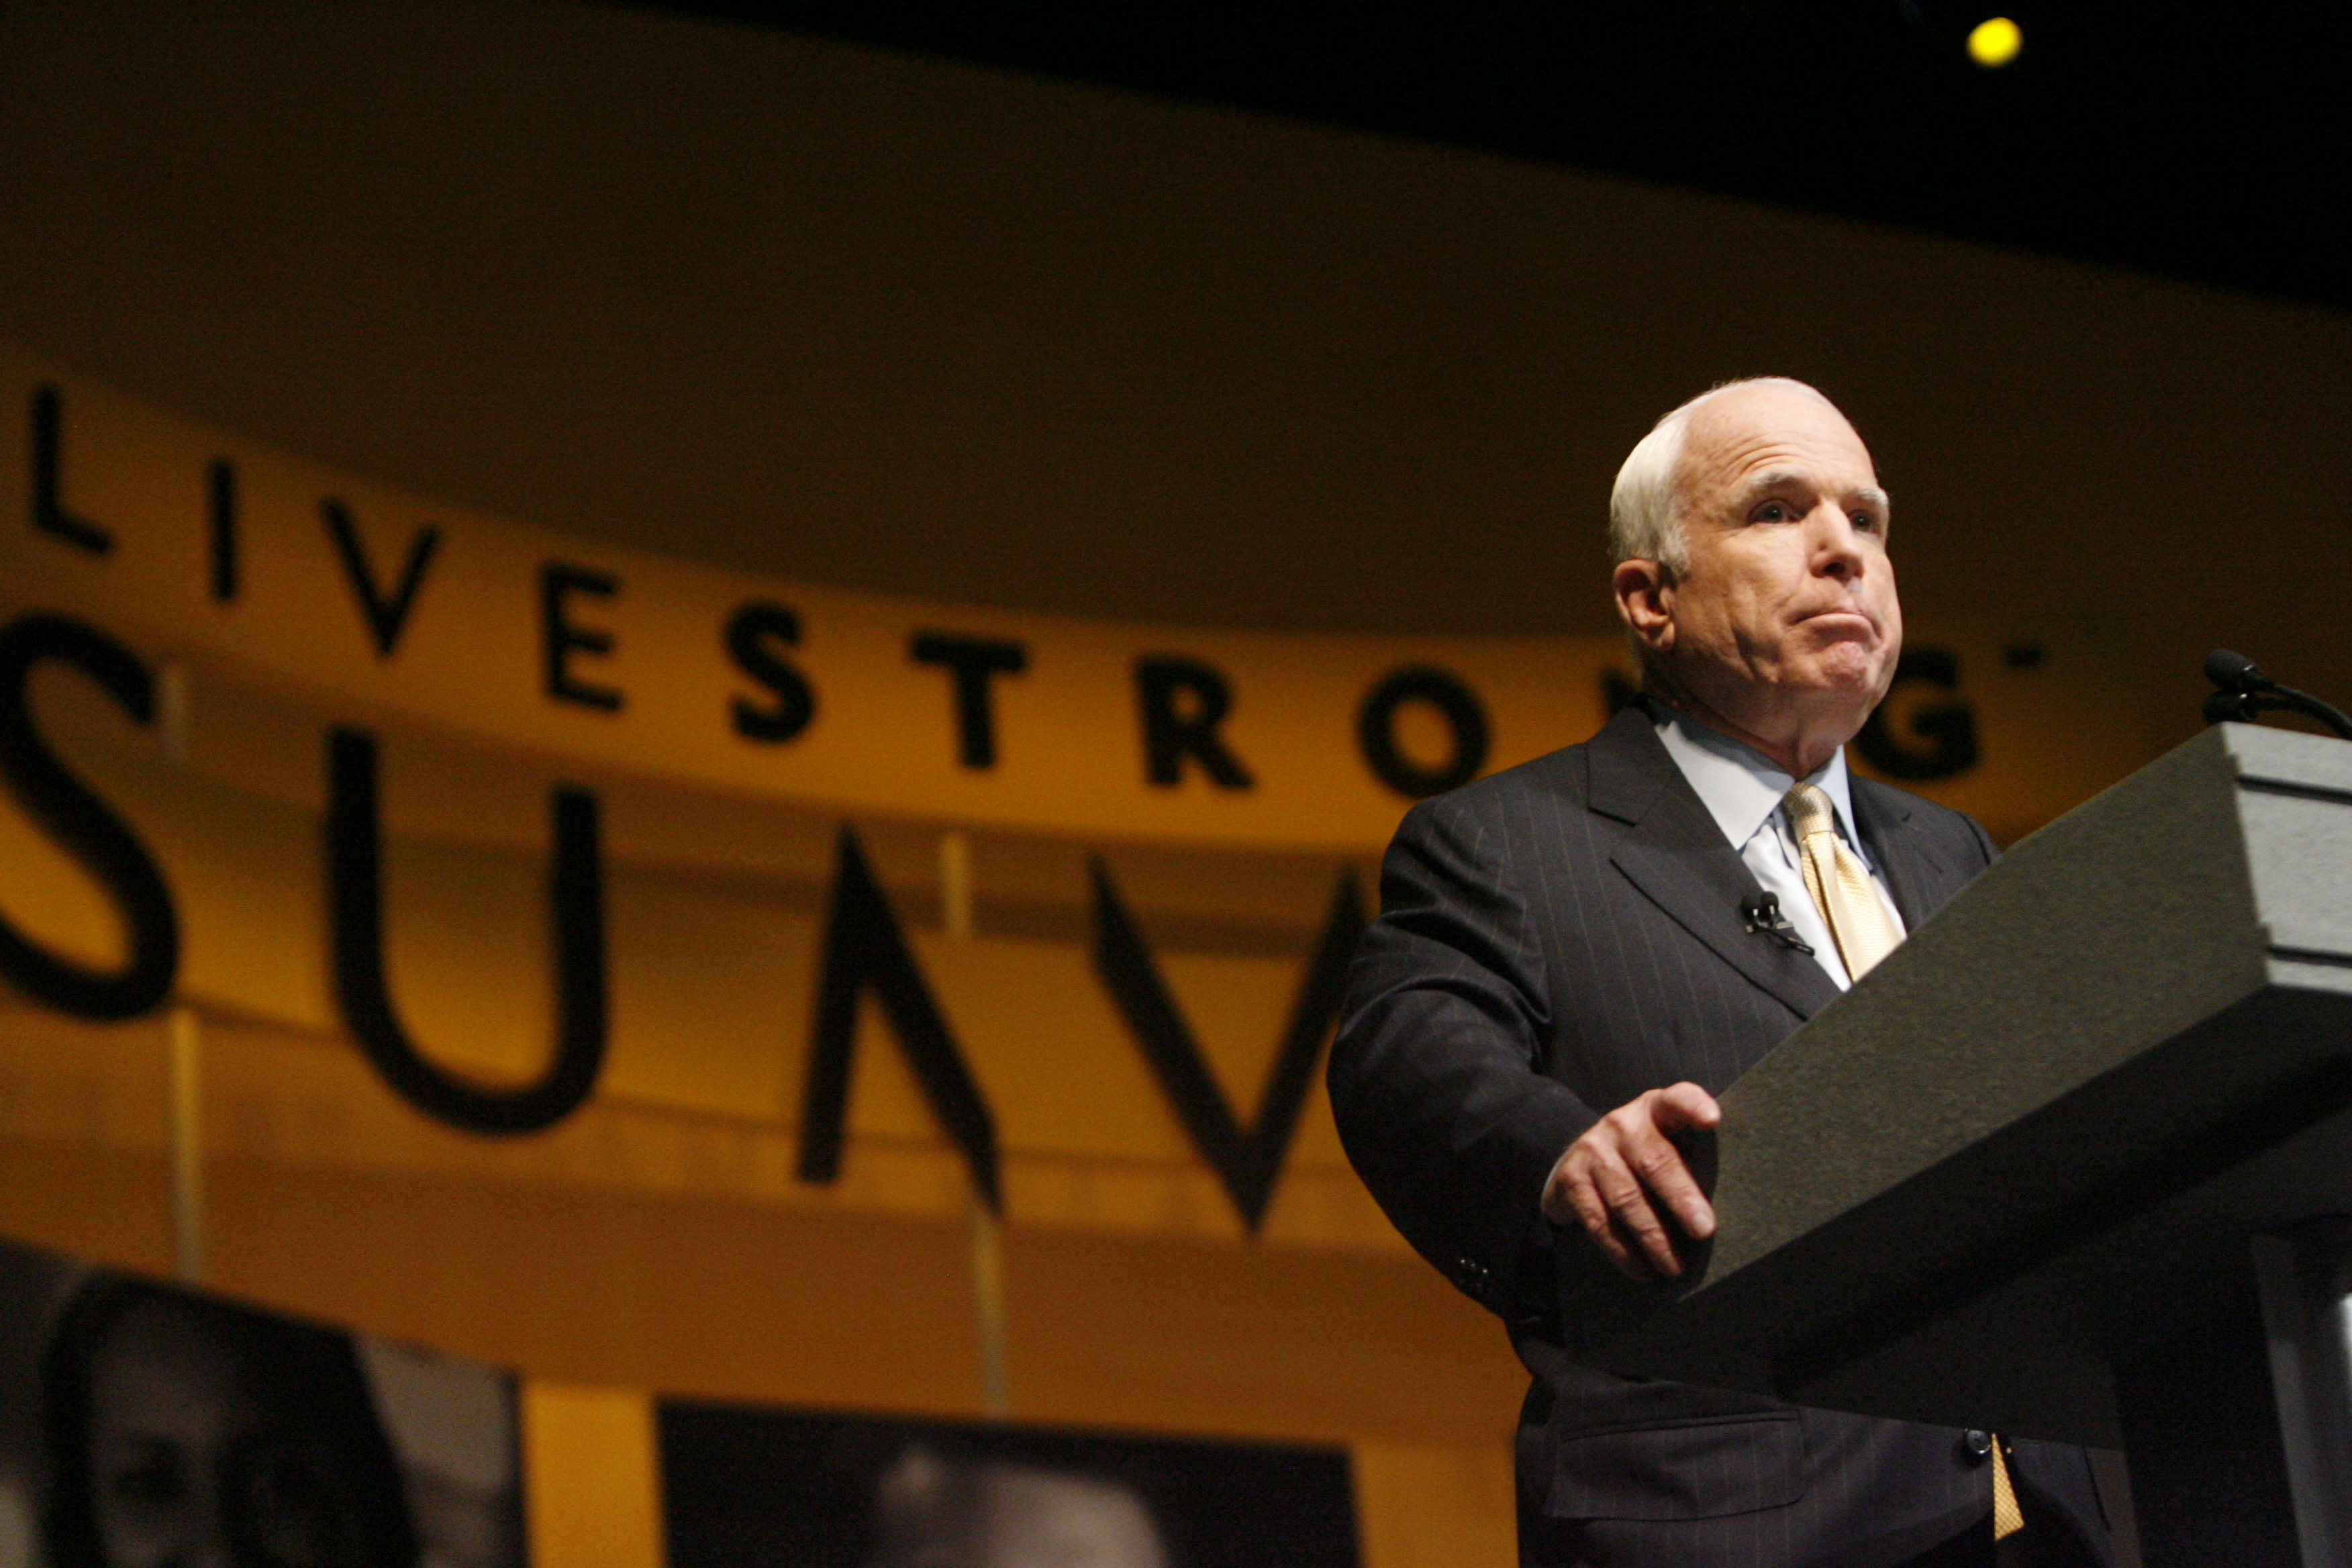 Senator McCain at Livestrong Summit